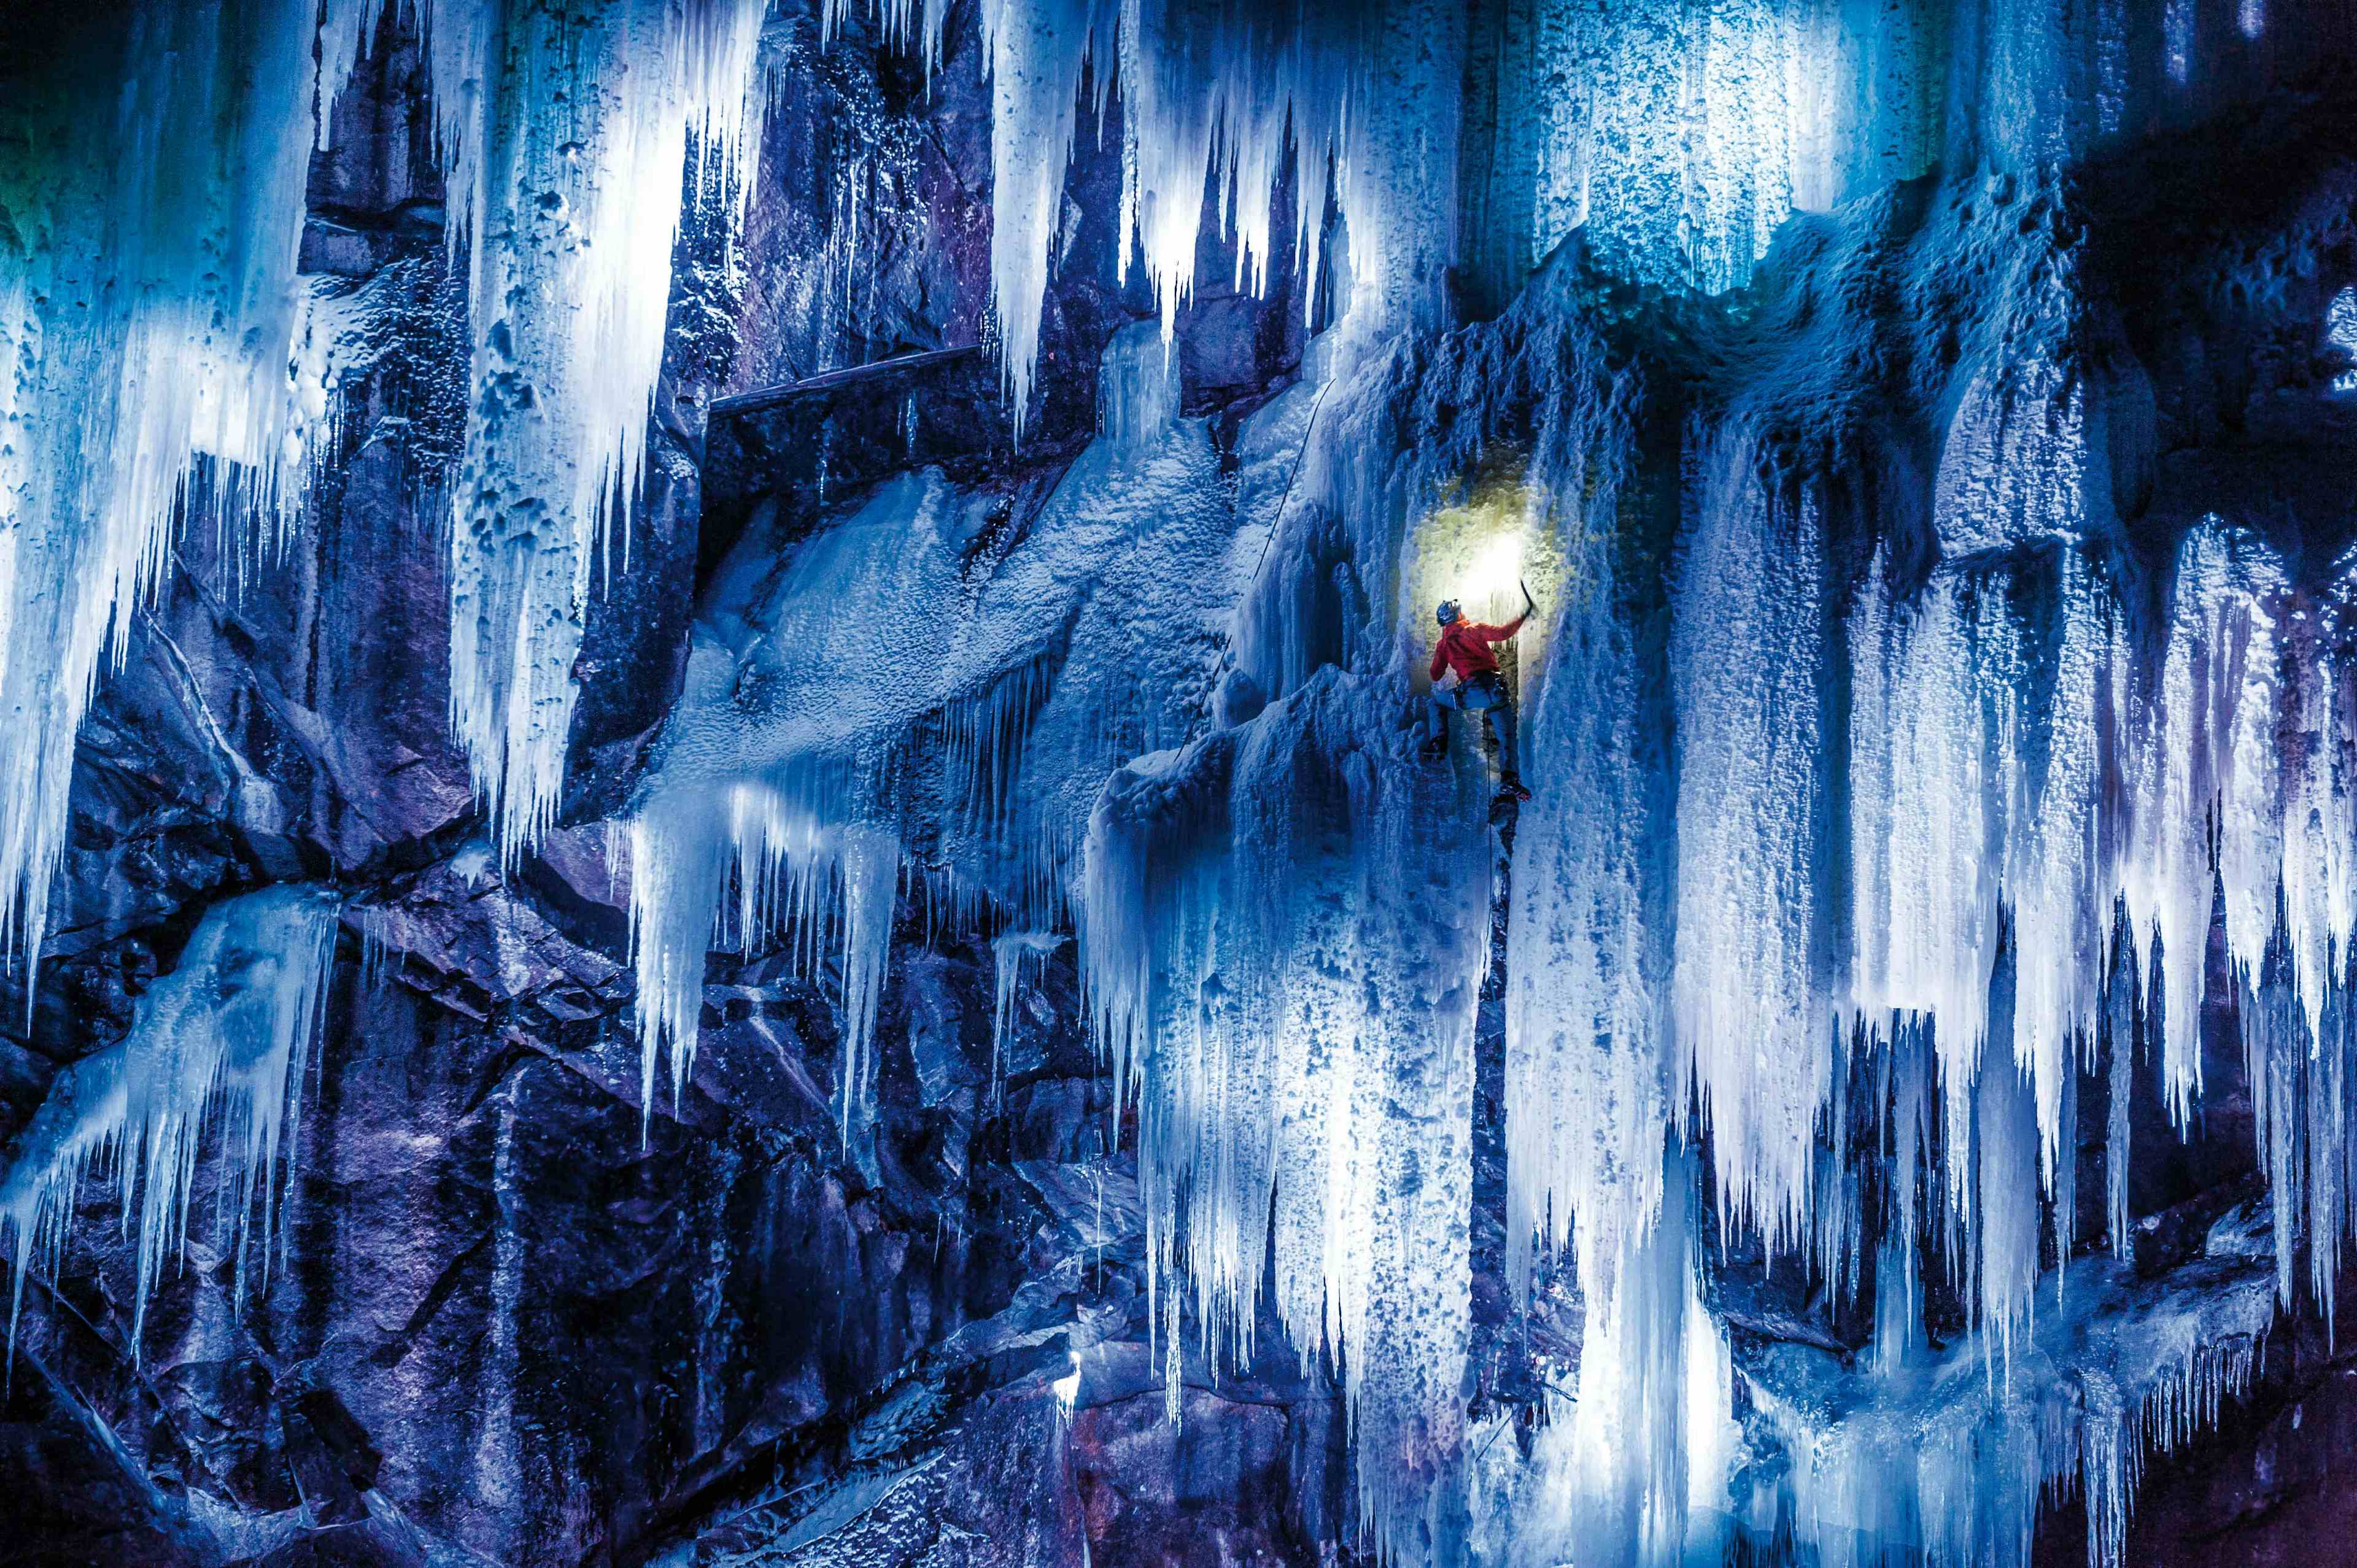 En isklatrer i rød jakke sett nedenfra klatrer den turkisfargede isen.